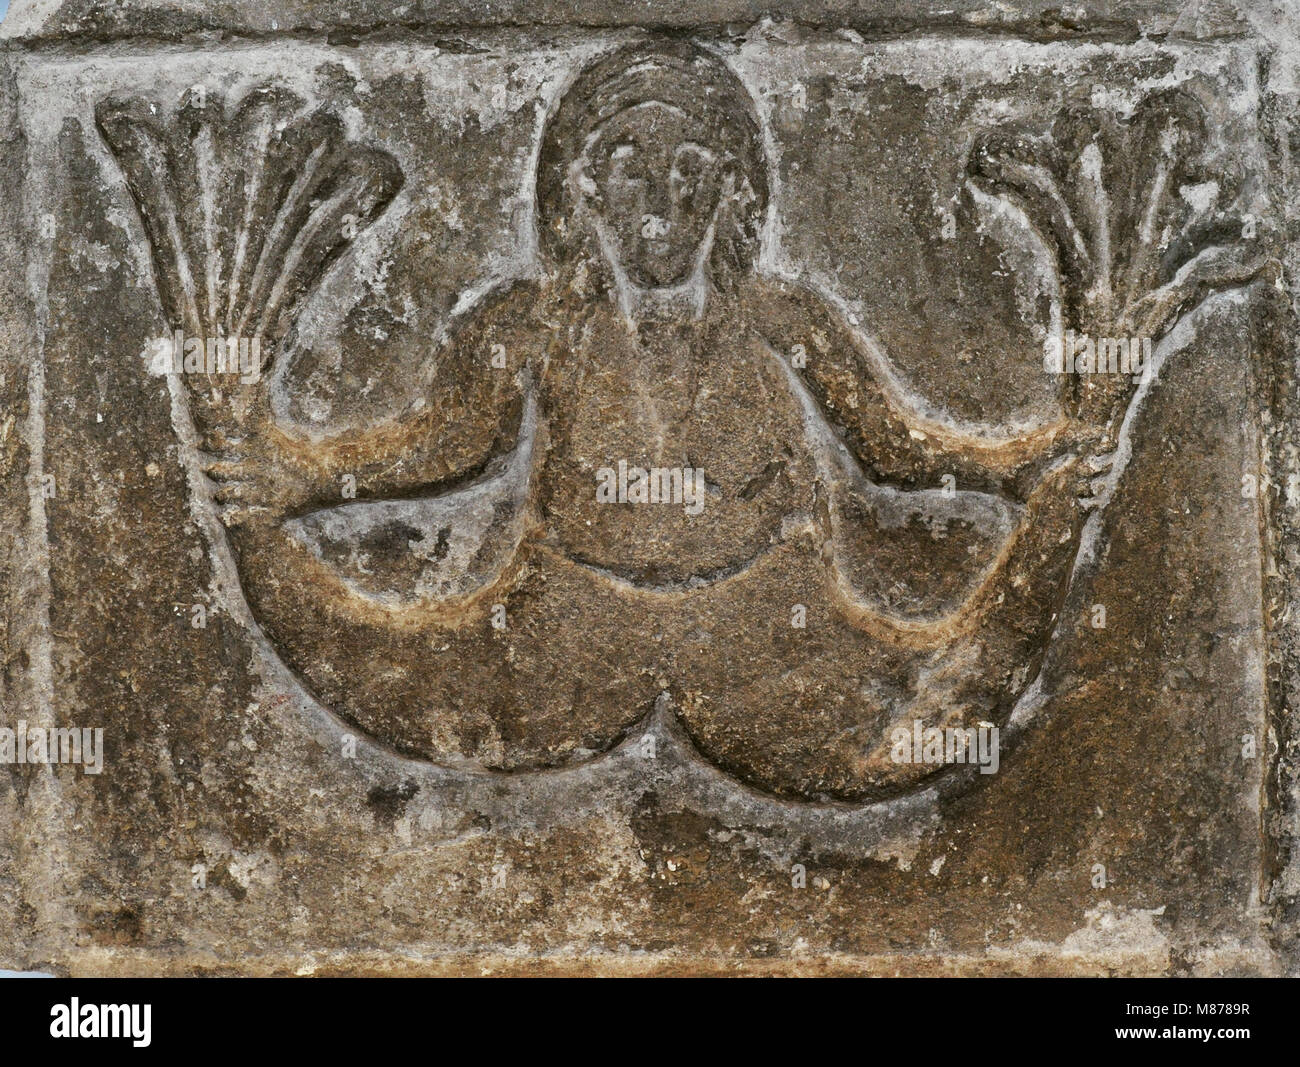 La mitologia. Sirena. Sollievo. Colonia, c. 1100. Calcare. Museo Schnütgen. Colonia, Germania. Foto Stock